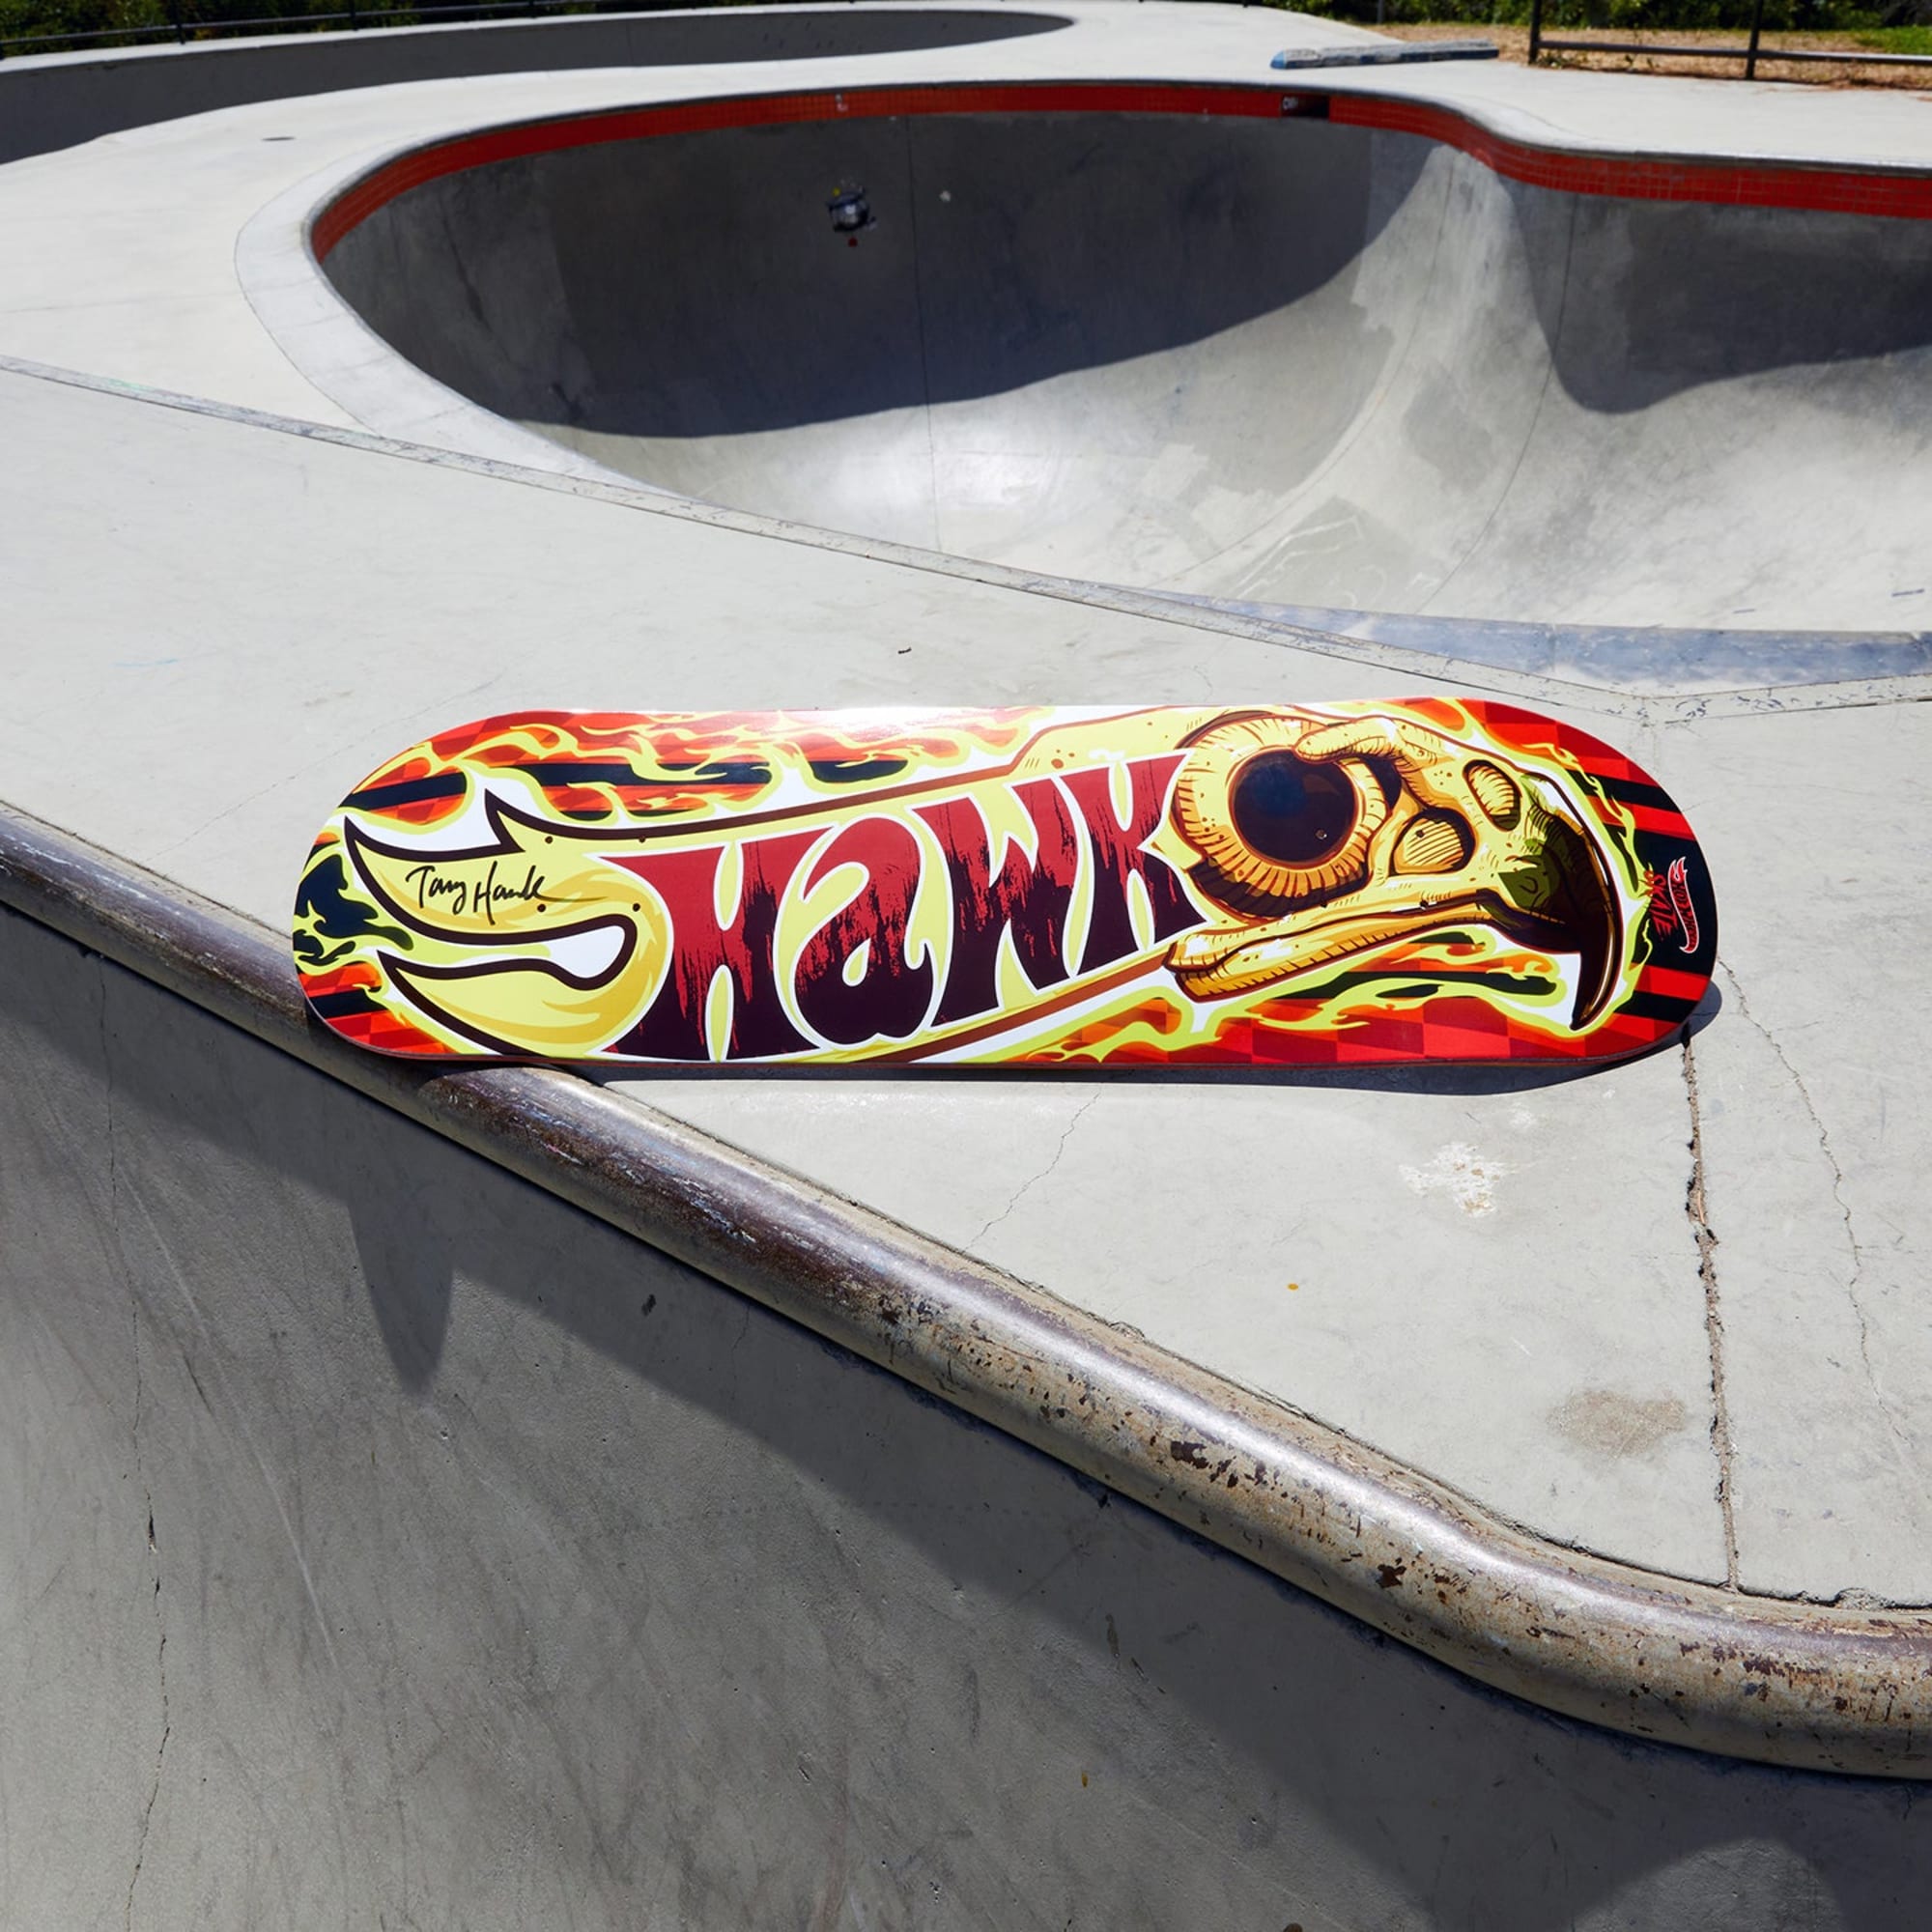 Tony Hawk x Hot Wheels Skate, Wildfire Deck & Fingerboard